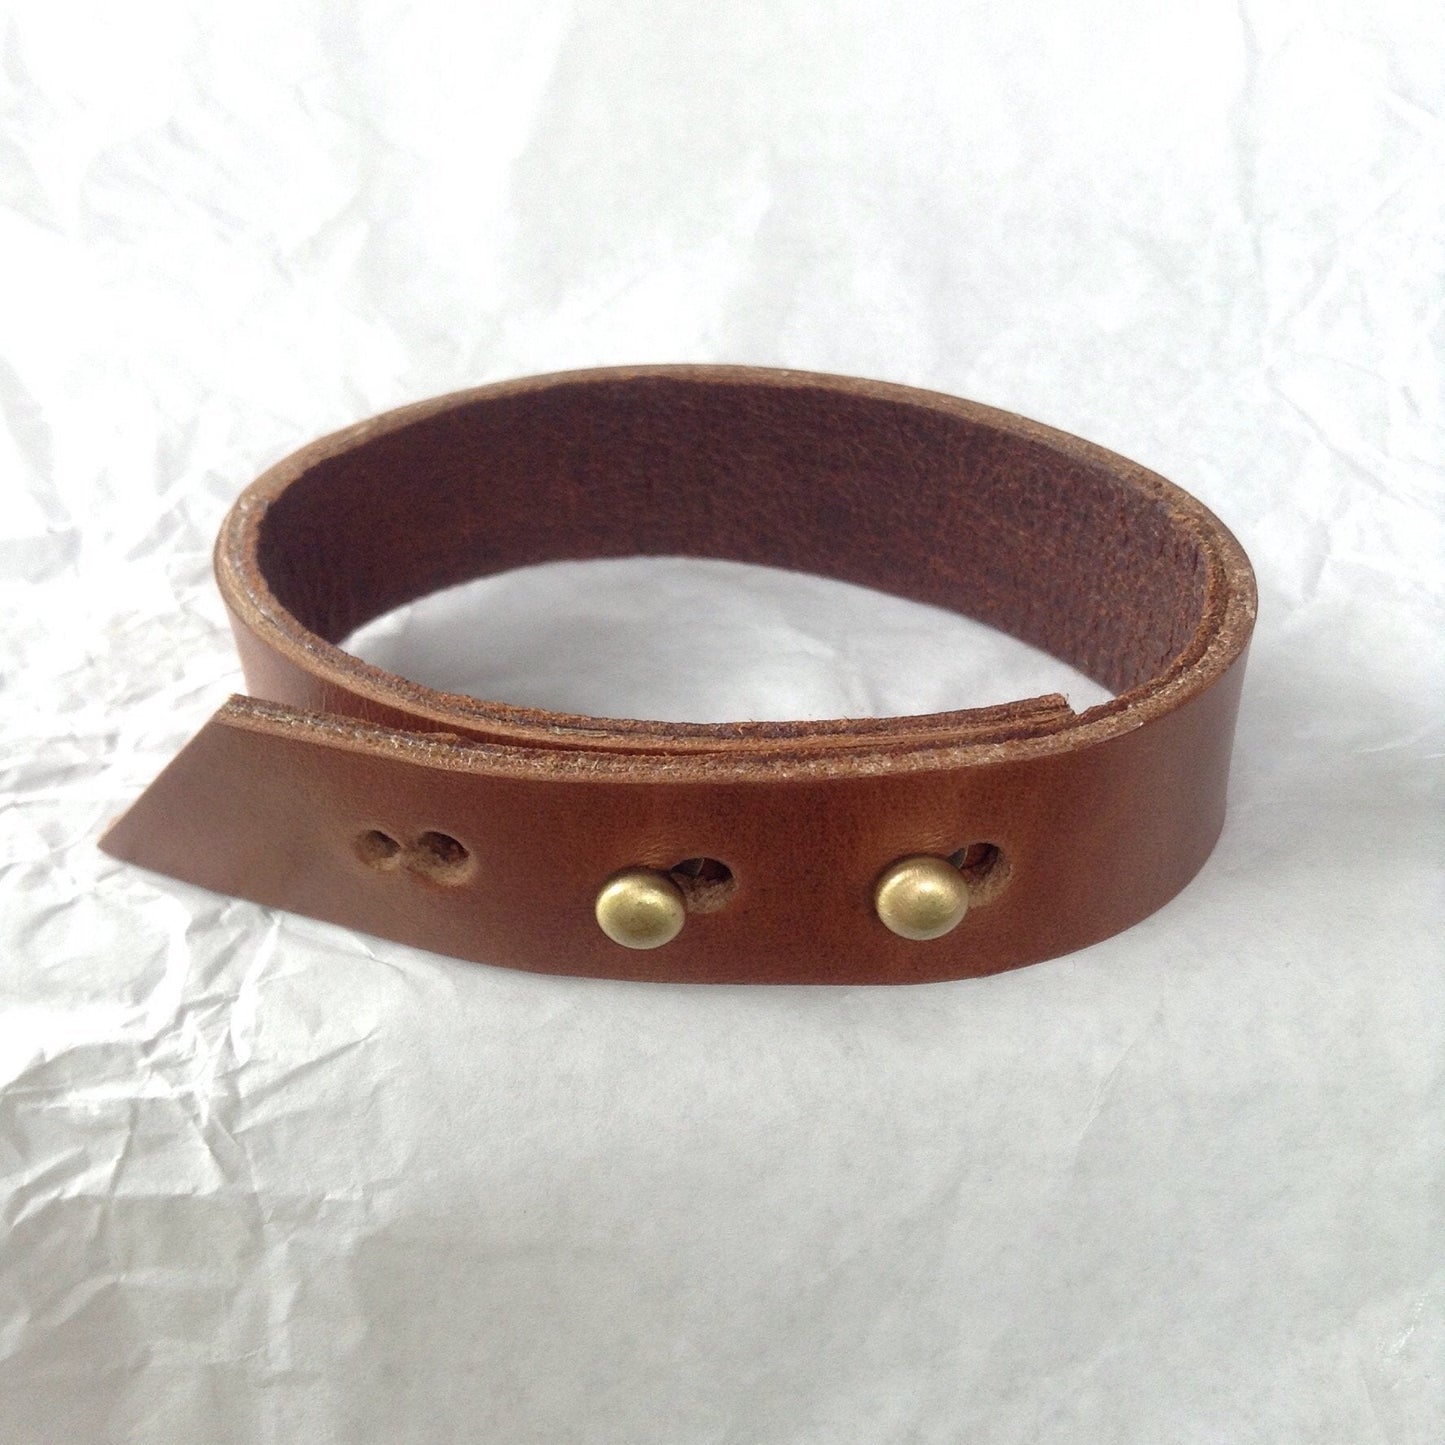 Oiled deerskin and caramel leather adjustable bracelet / anklet.